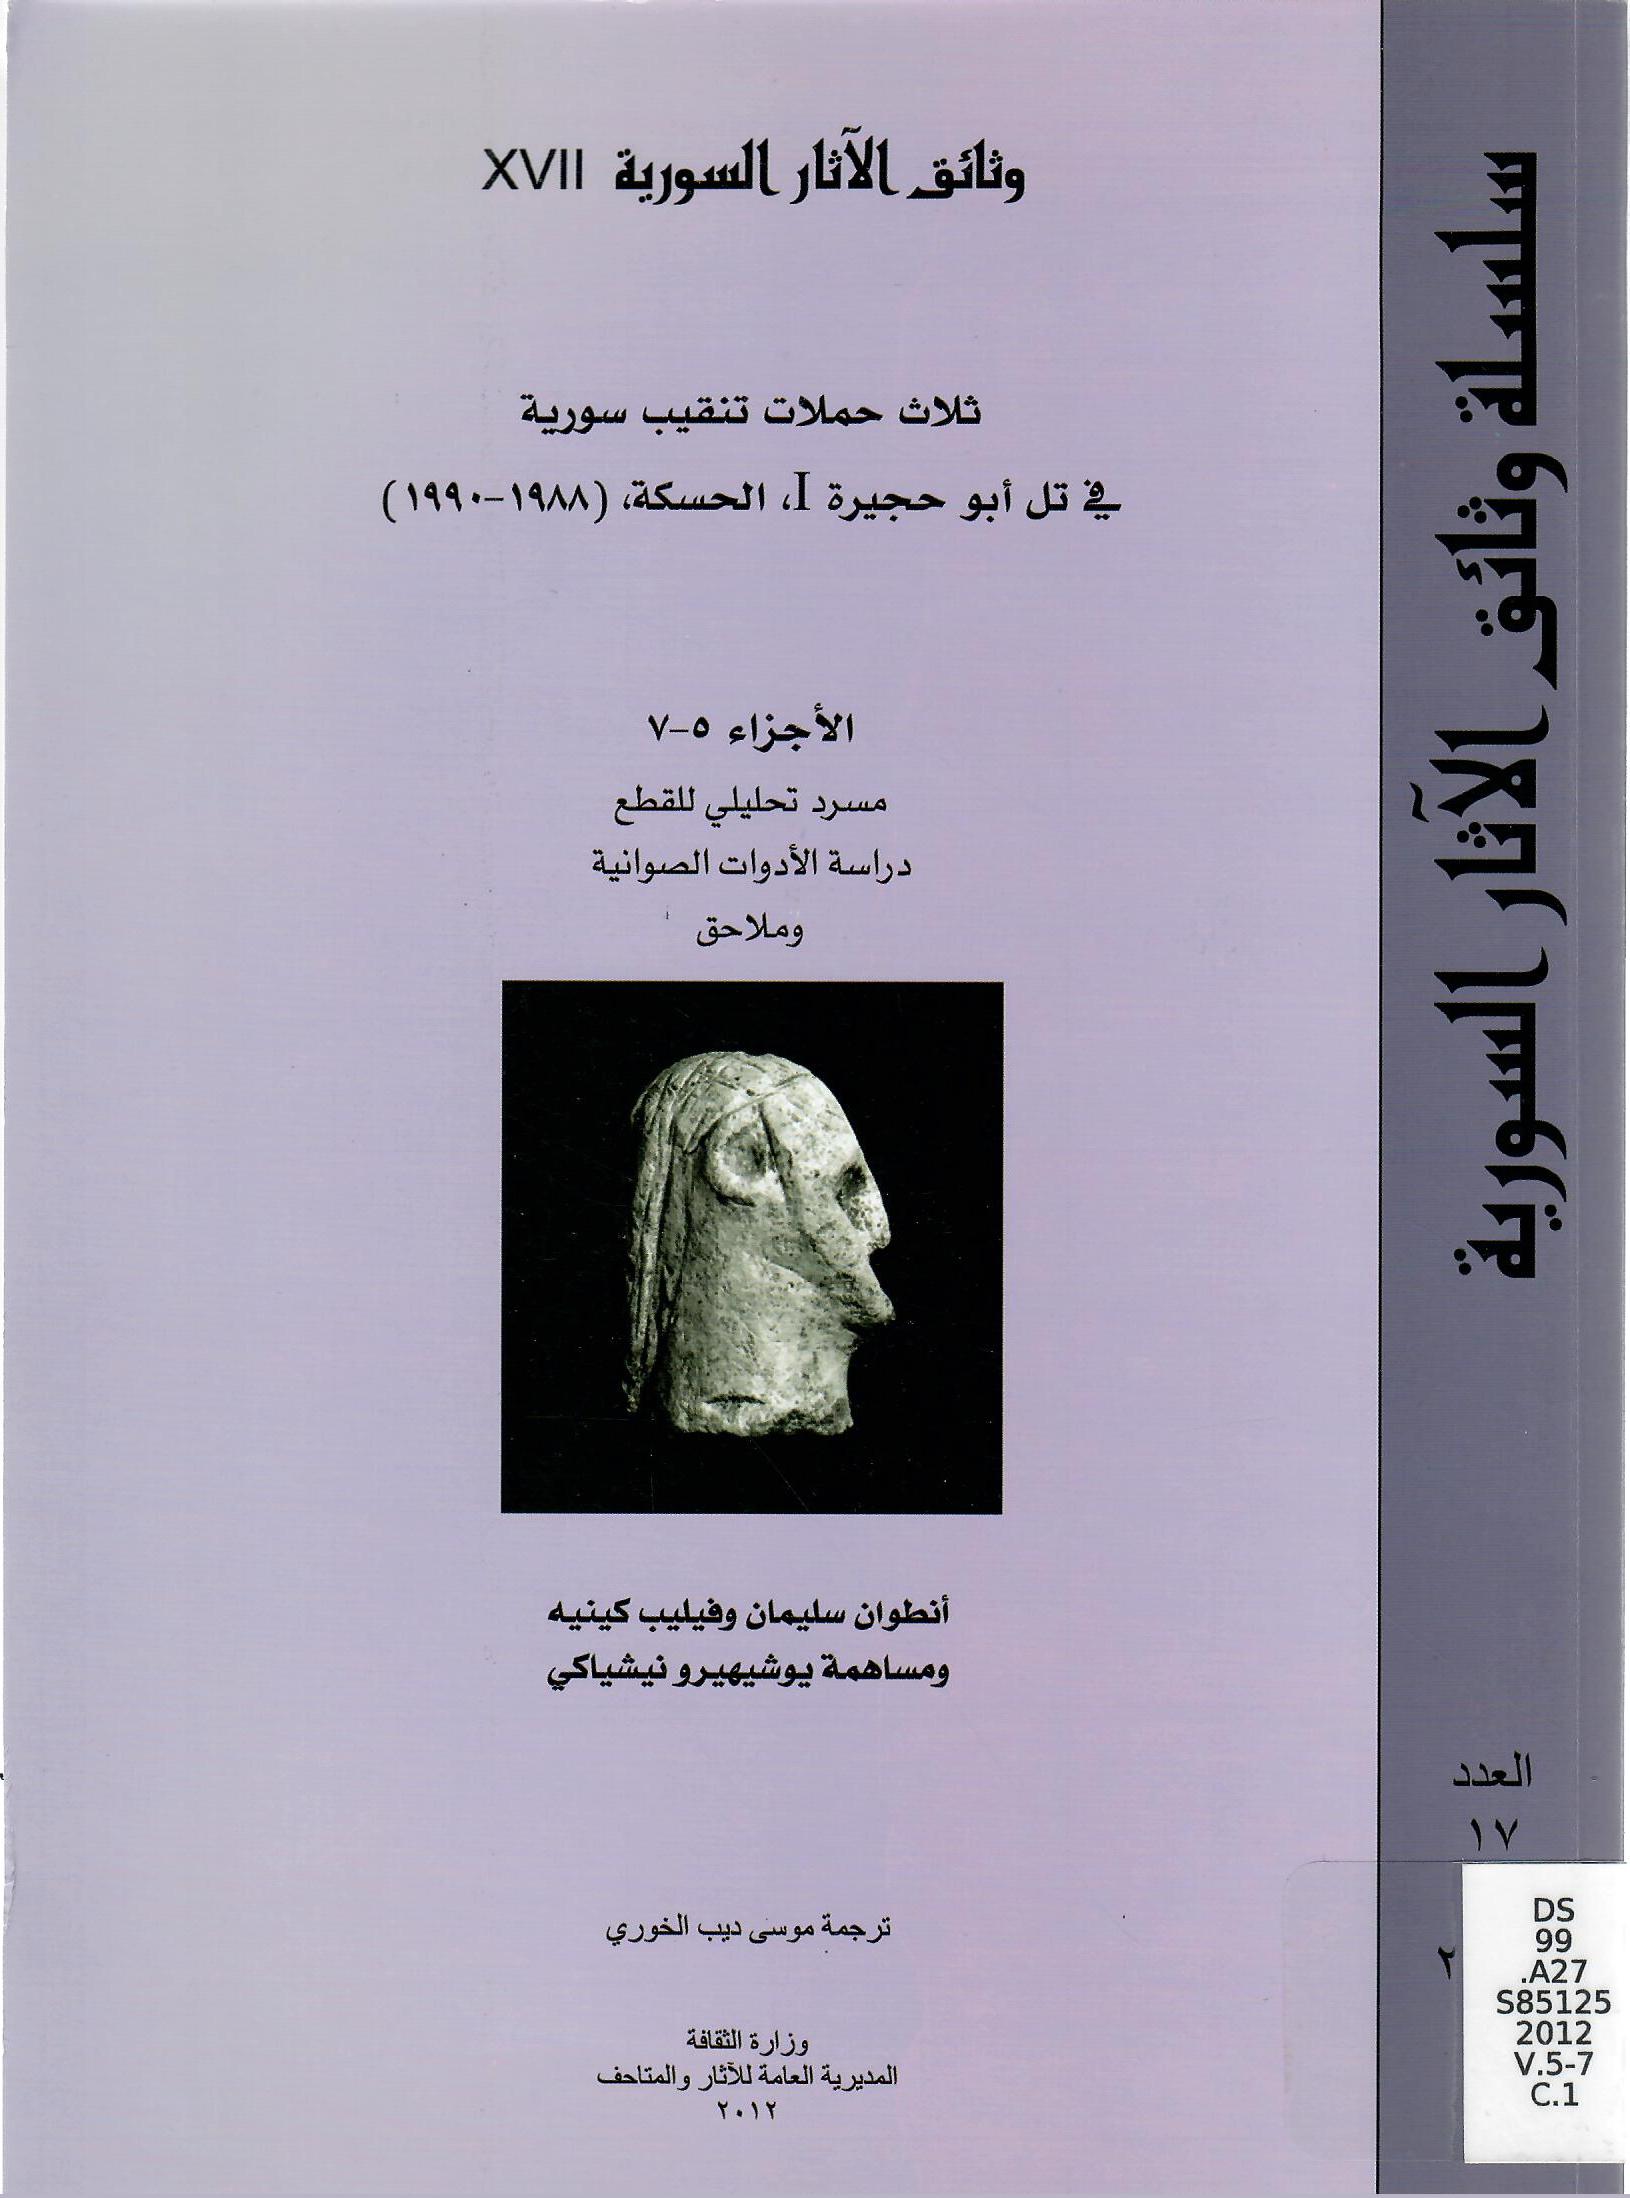 ثلاث حملات تنقيب سورية في تل أبو حجيرة 1 ، الحسكة ، (1988 - 1990 ) الأجزاء 5 -7